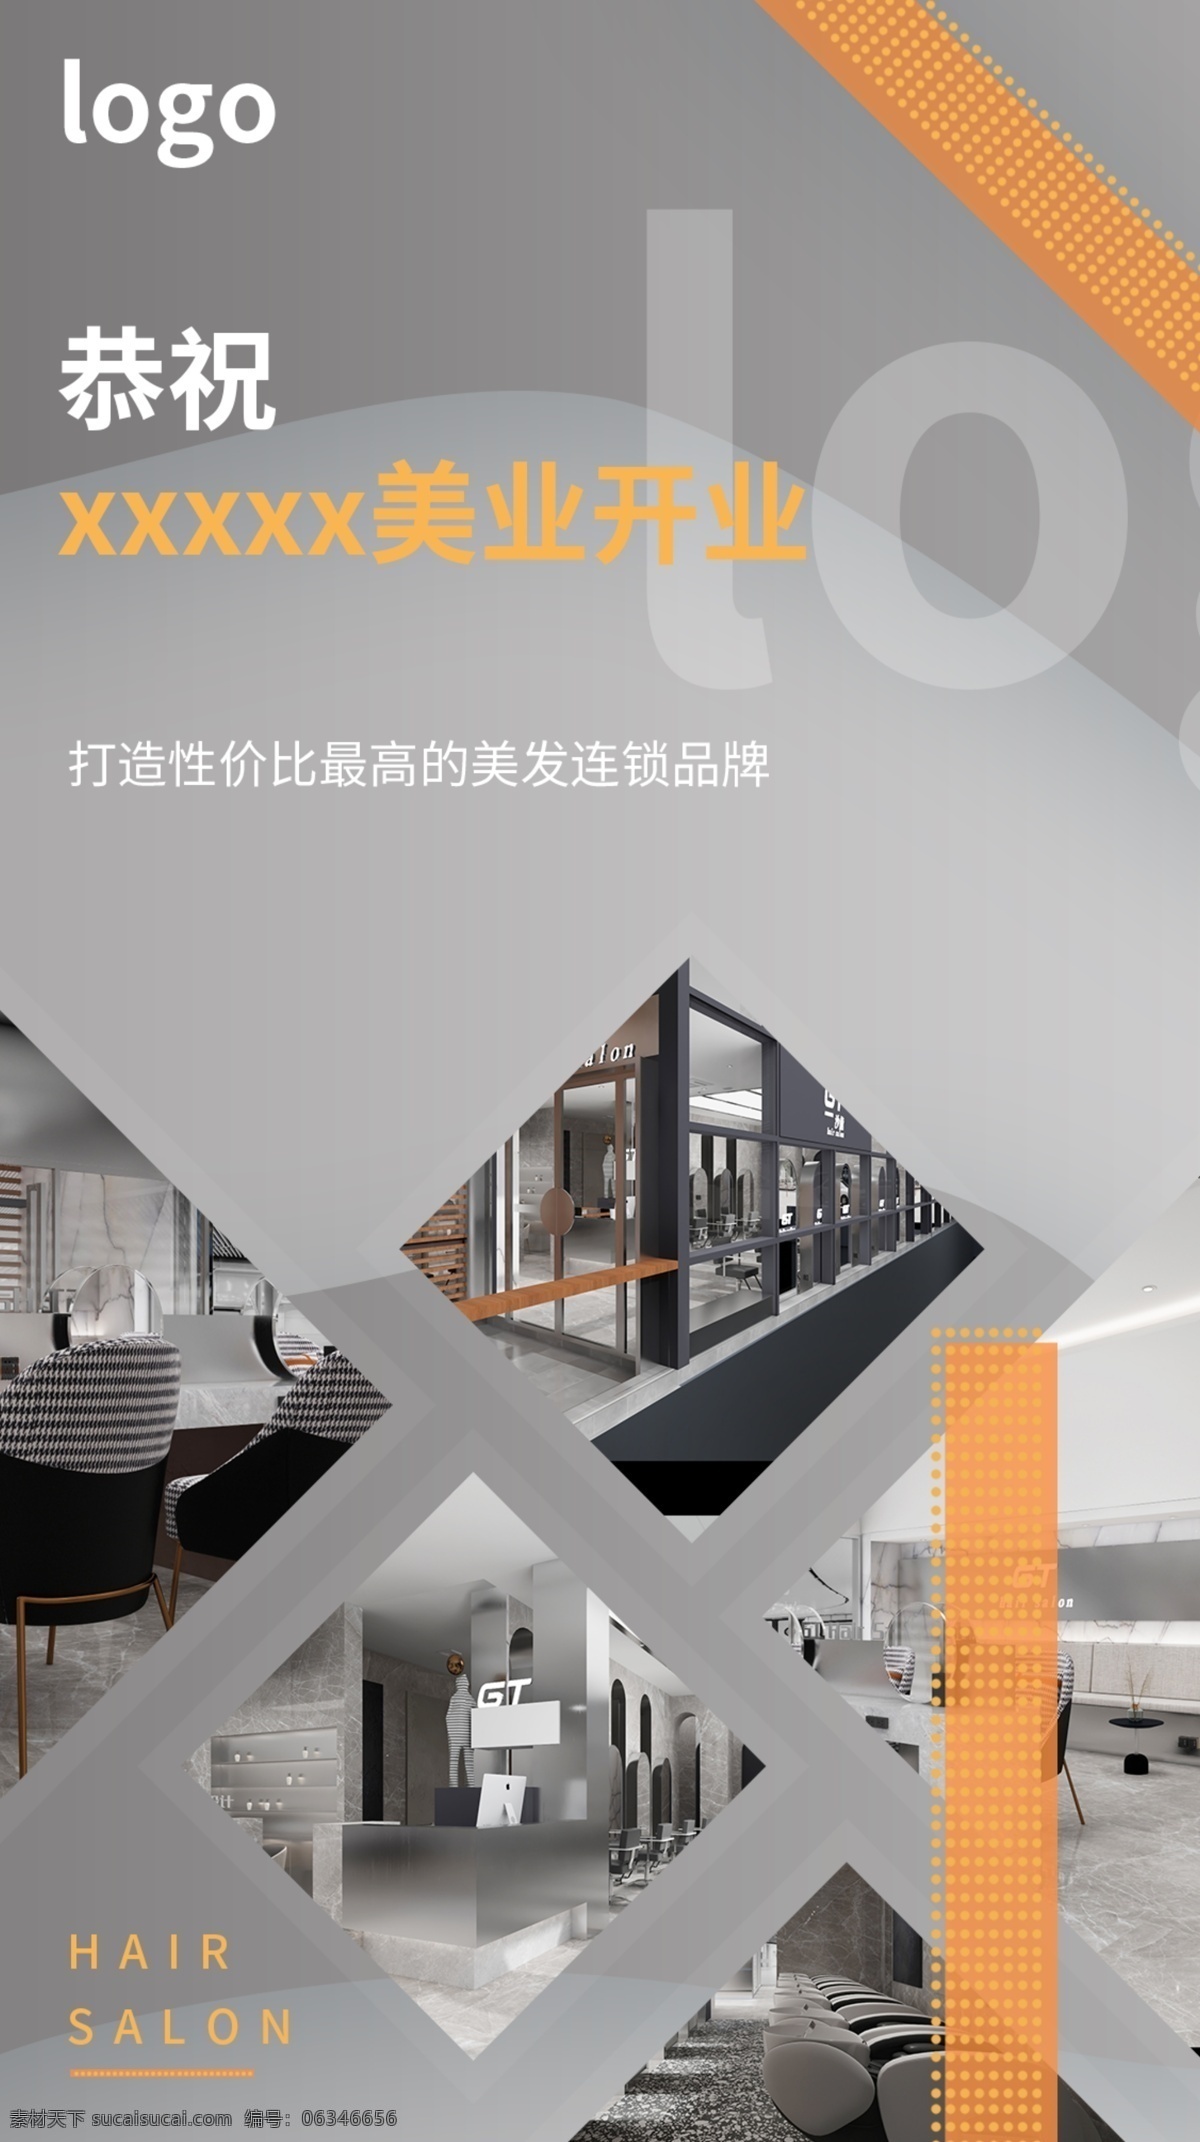 开业宣传海报 开业 宣传 海拔 美容 美发 web 界面设计 中文模板